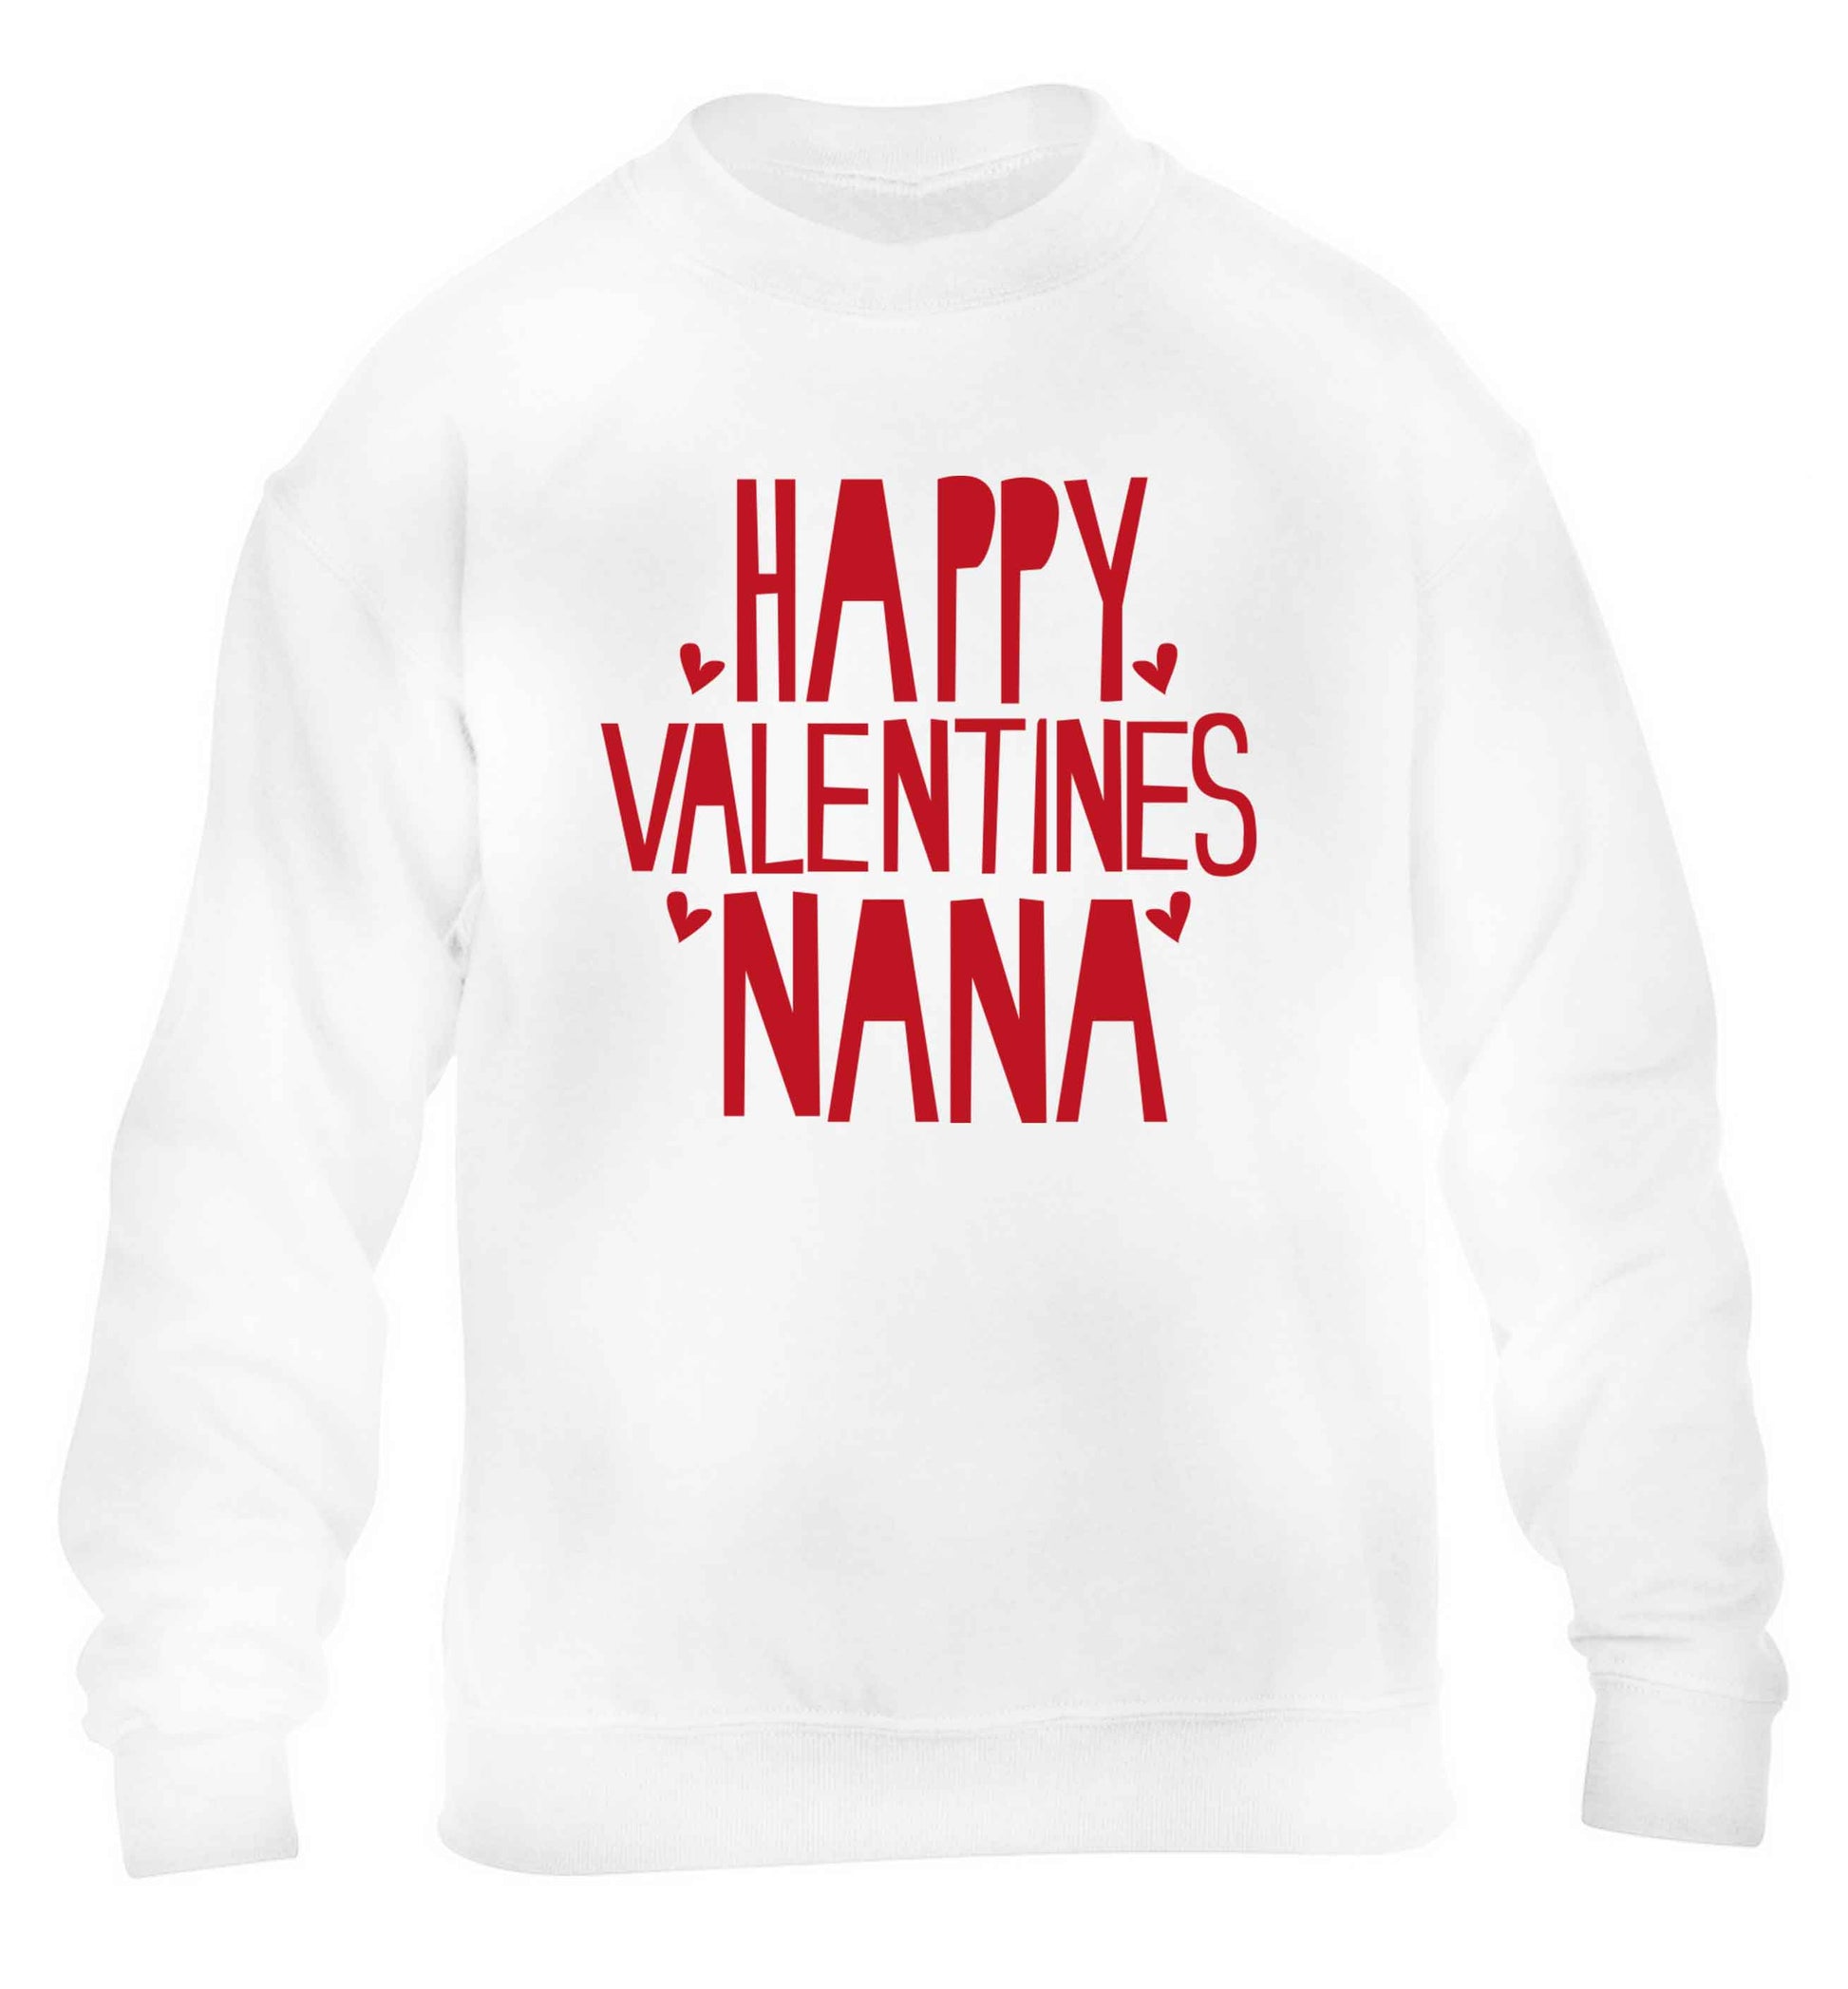 Happy valentines nana children's white sweater 12-13 Years